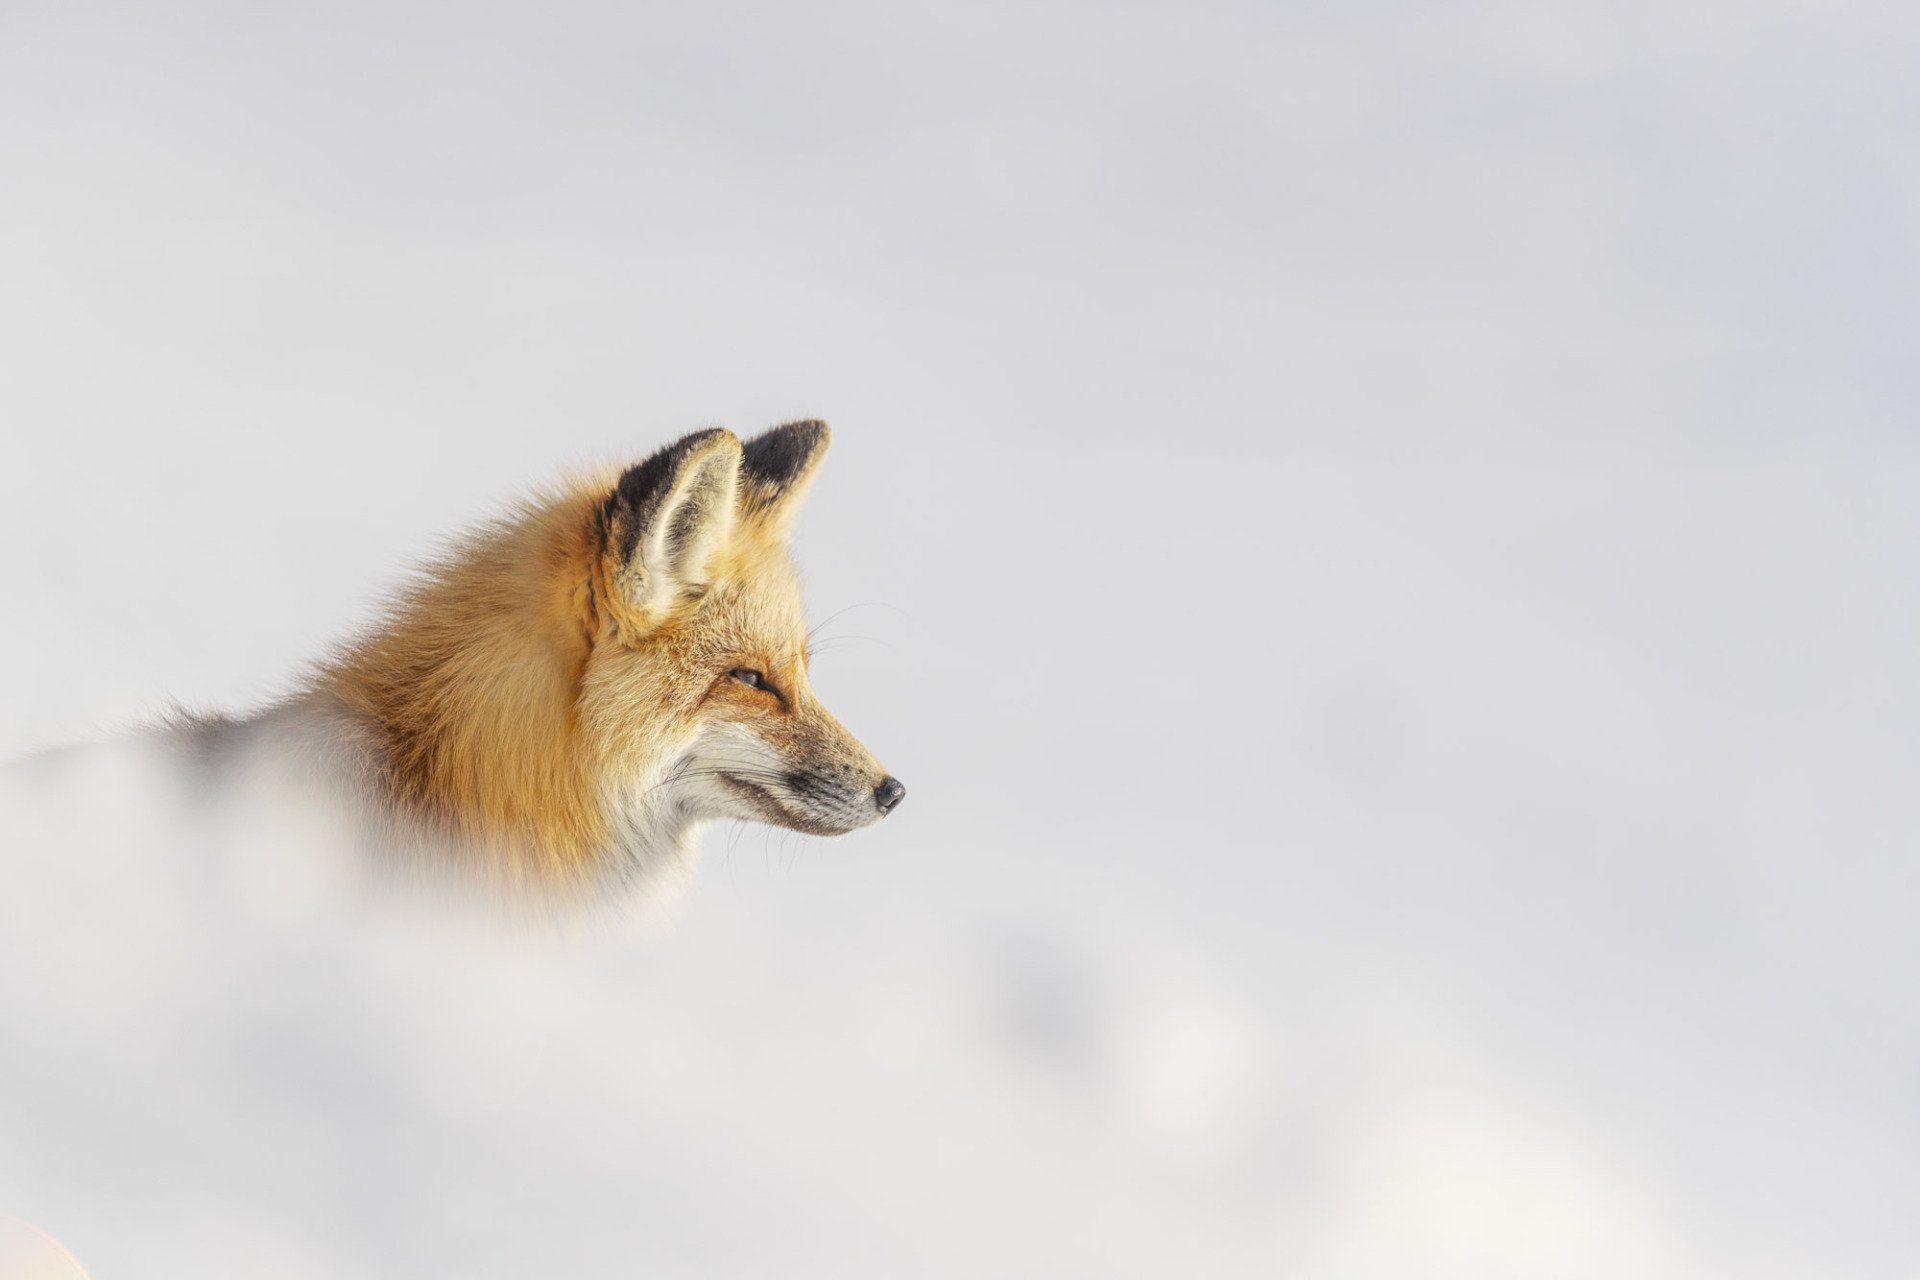 portrait d'un renard roux dans une ambiance hivernale neigeuse